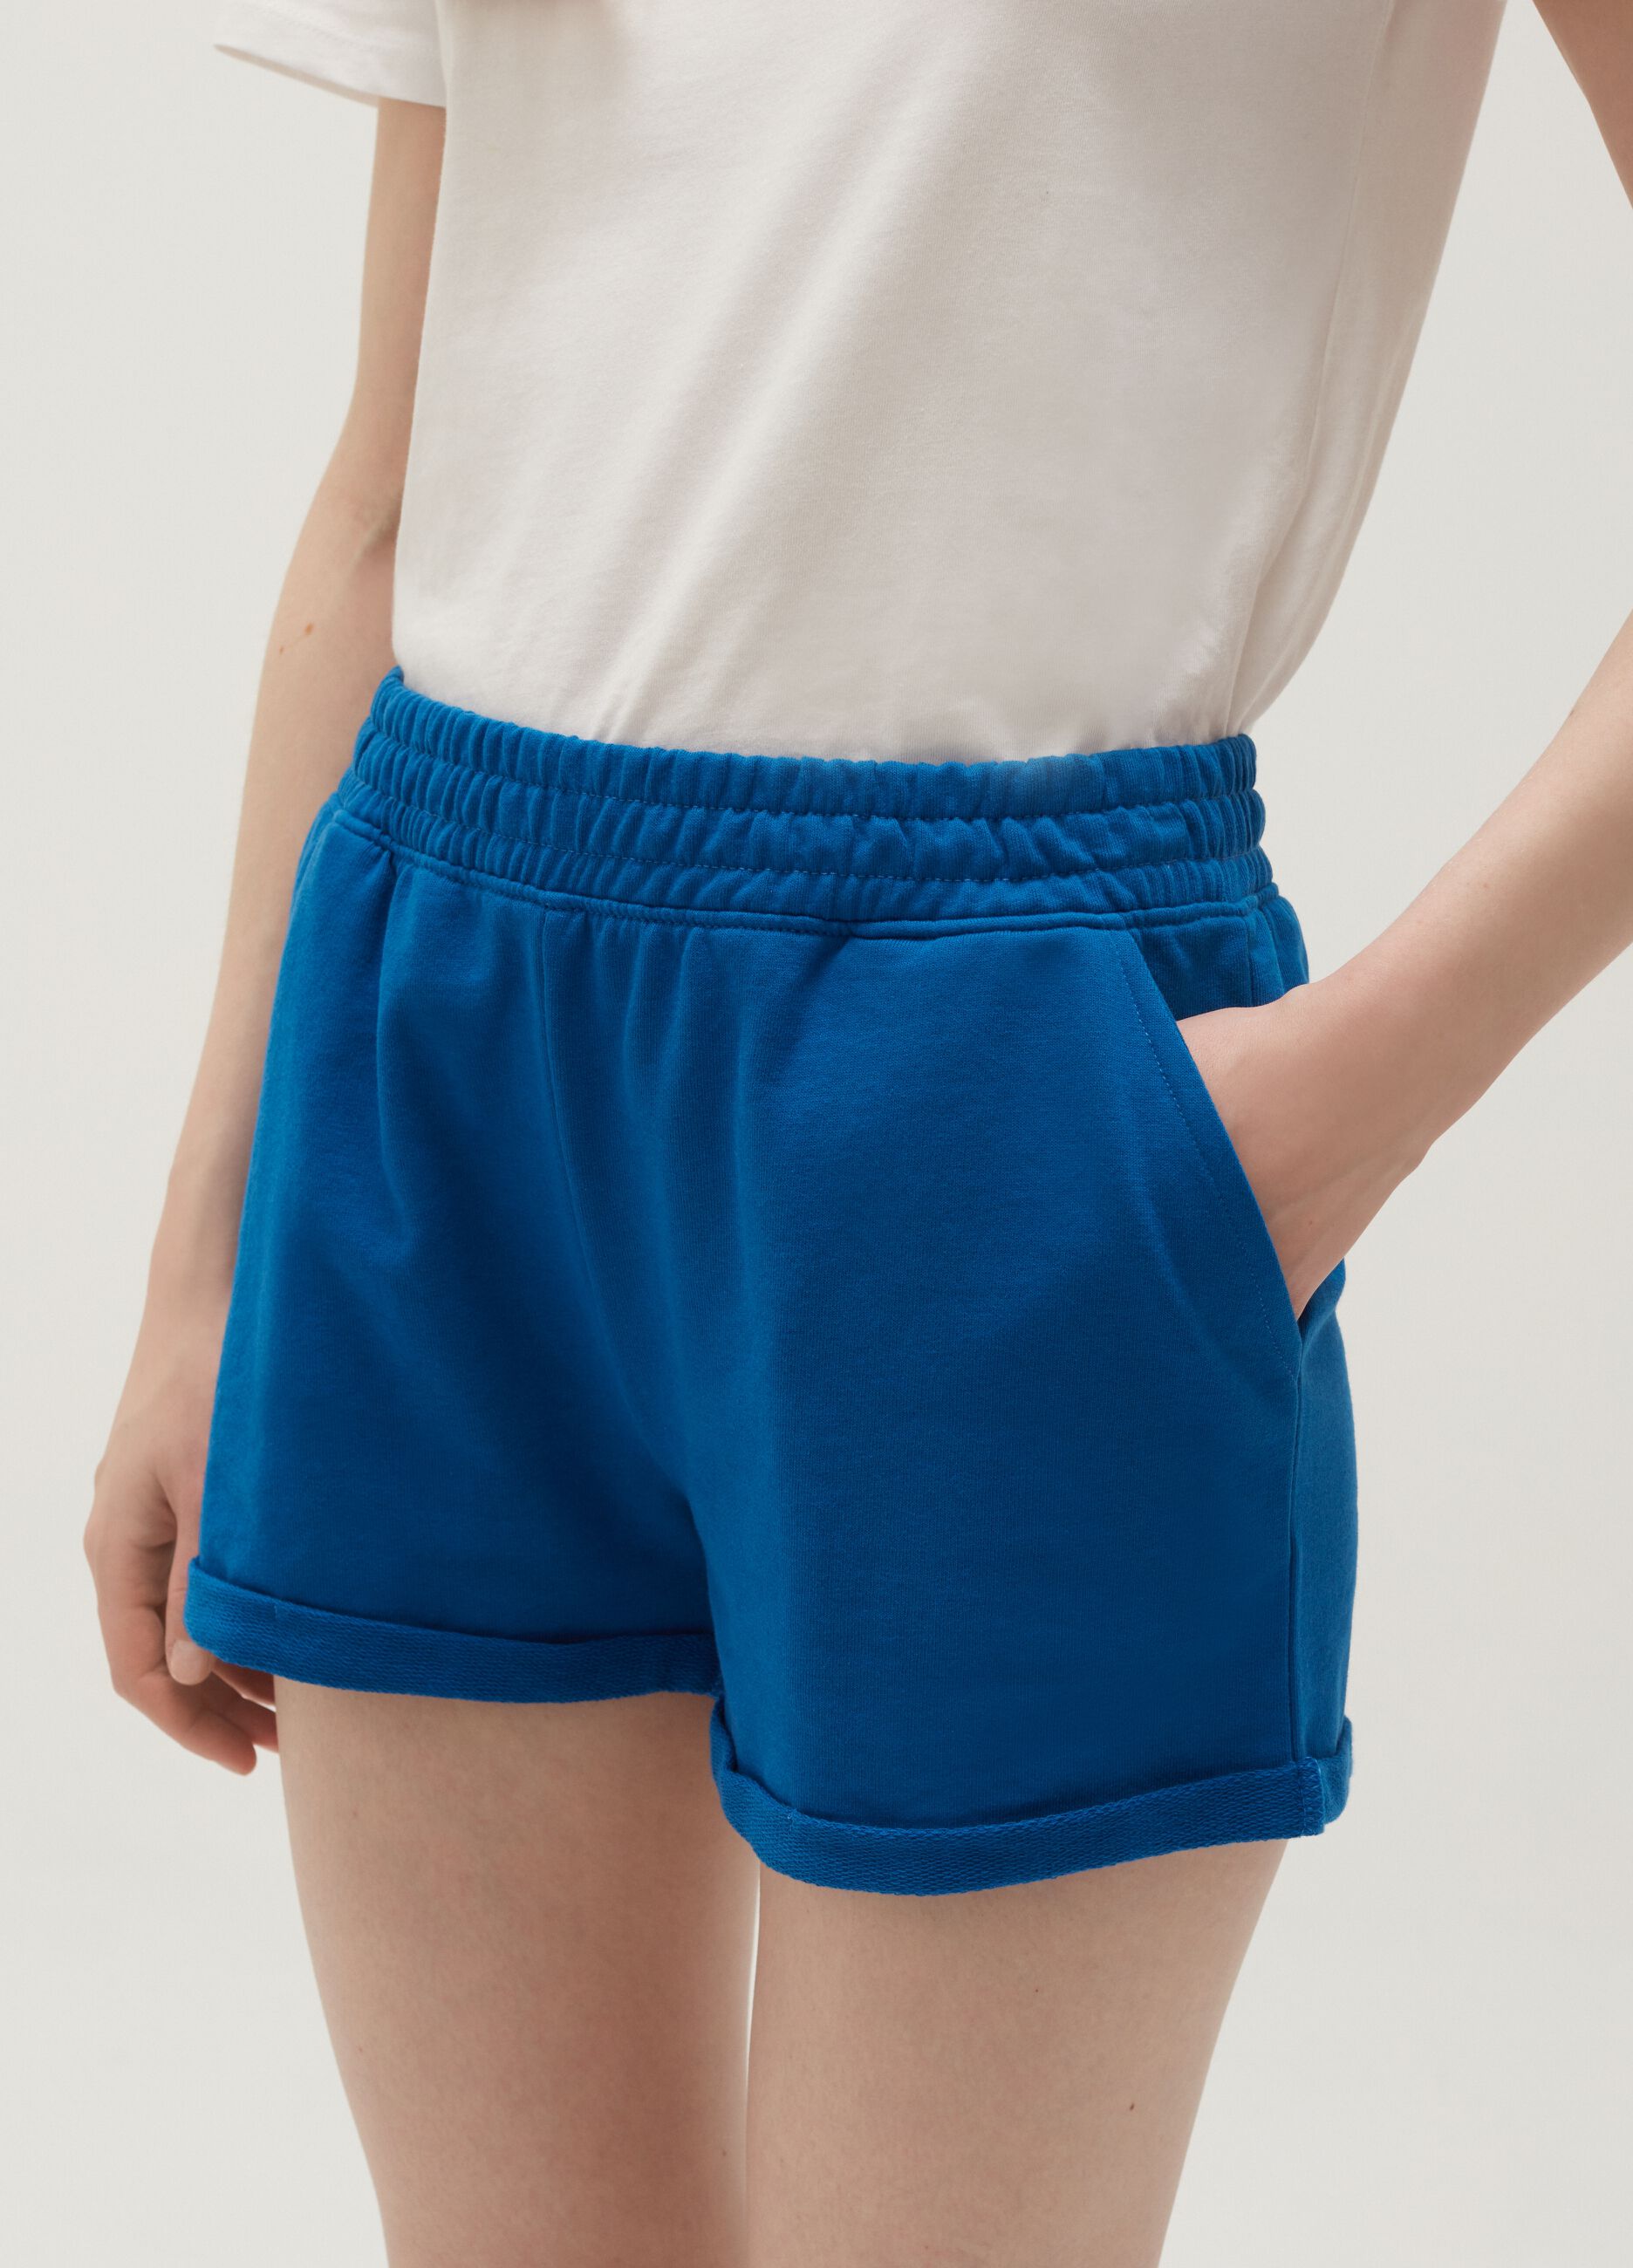 Plush shorts with turned up hems